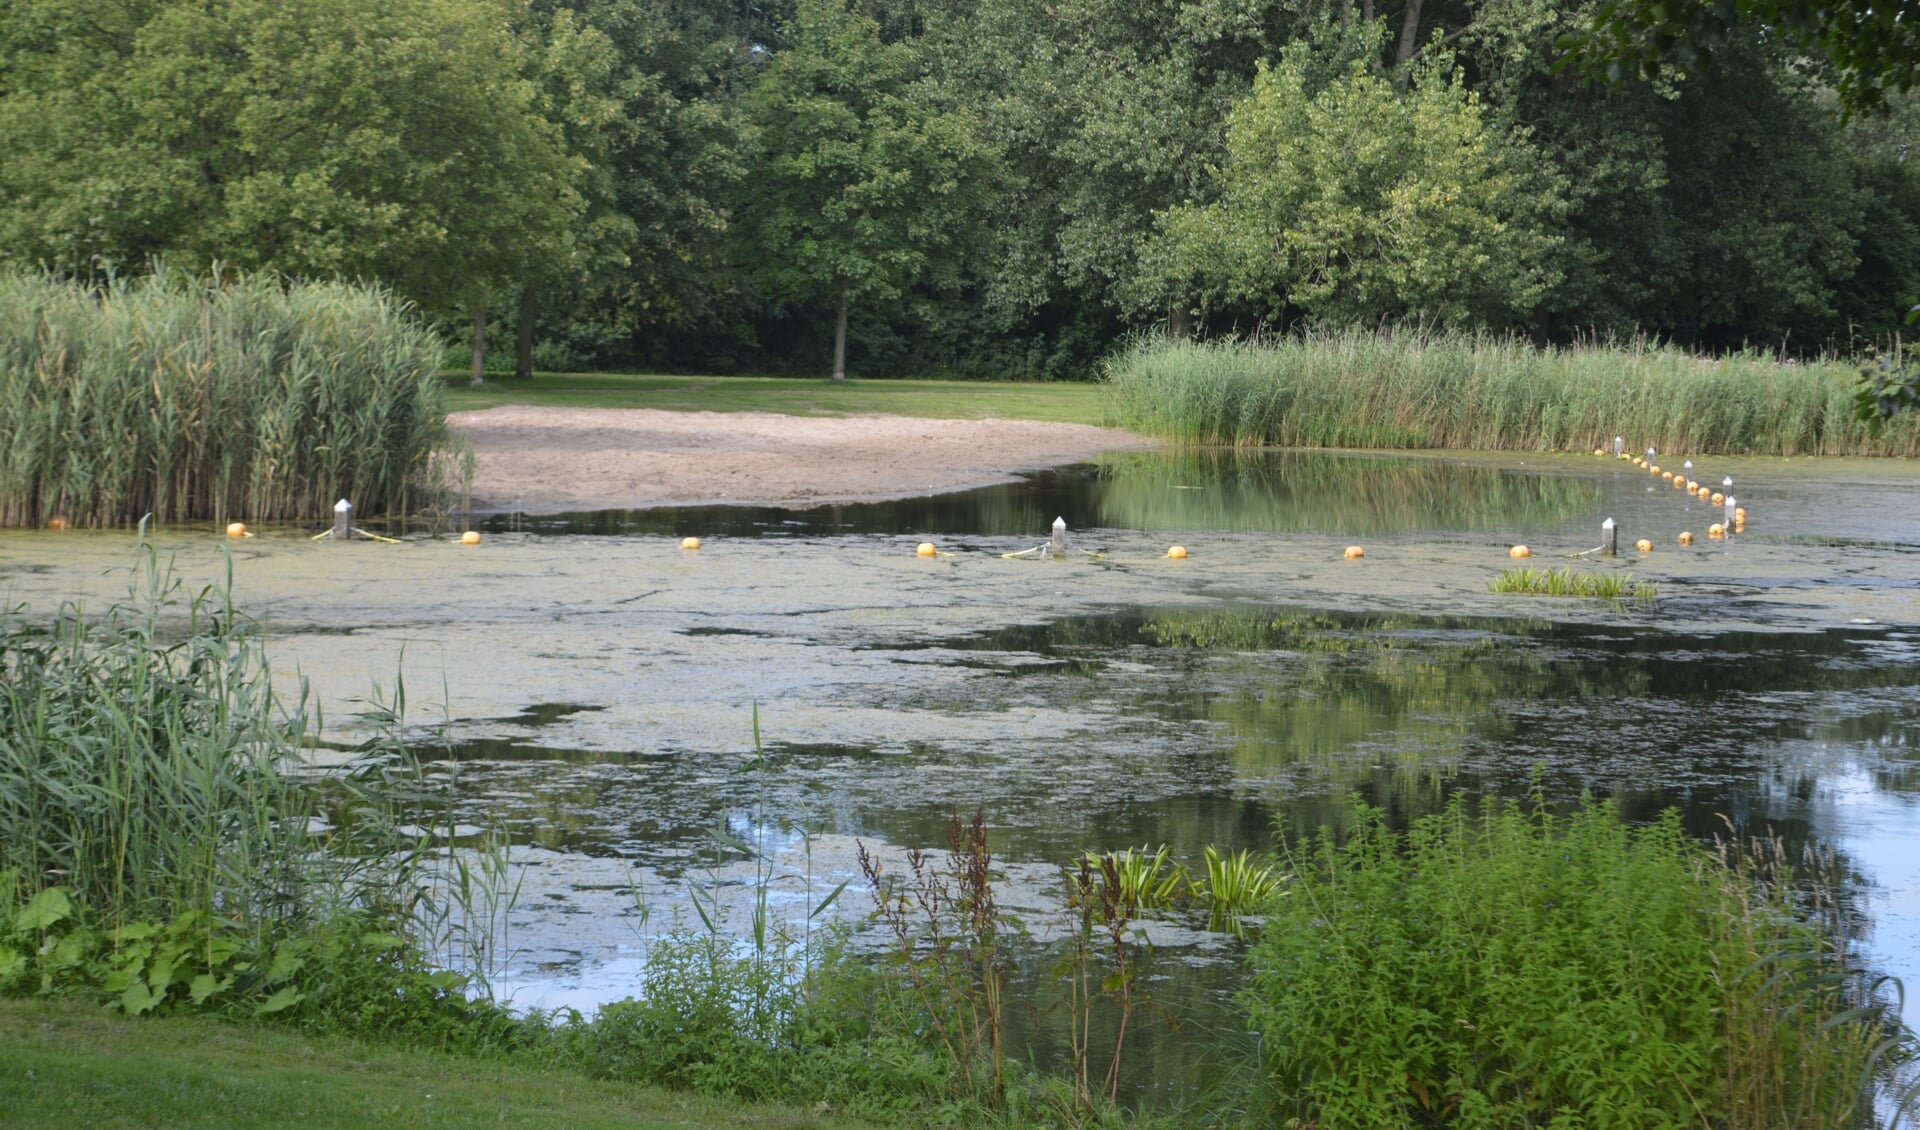 De zwemplas van Wevershoek wordt weer geplaagd door blauwalg